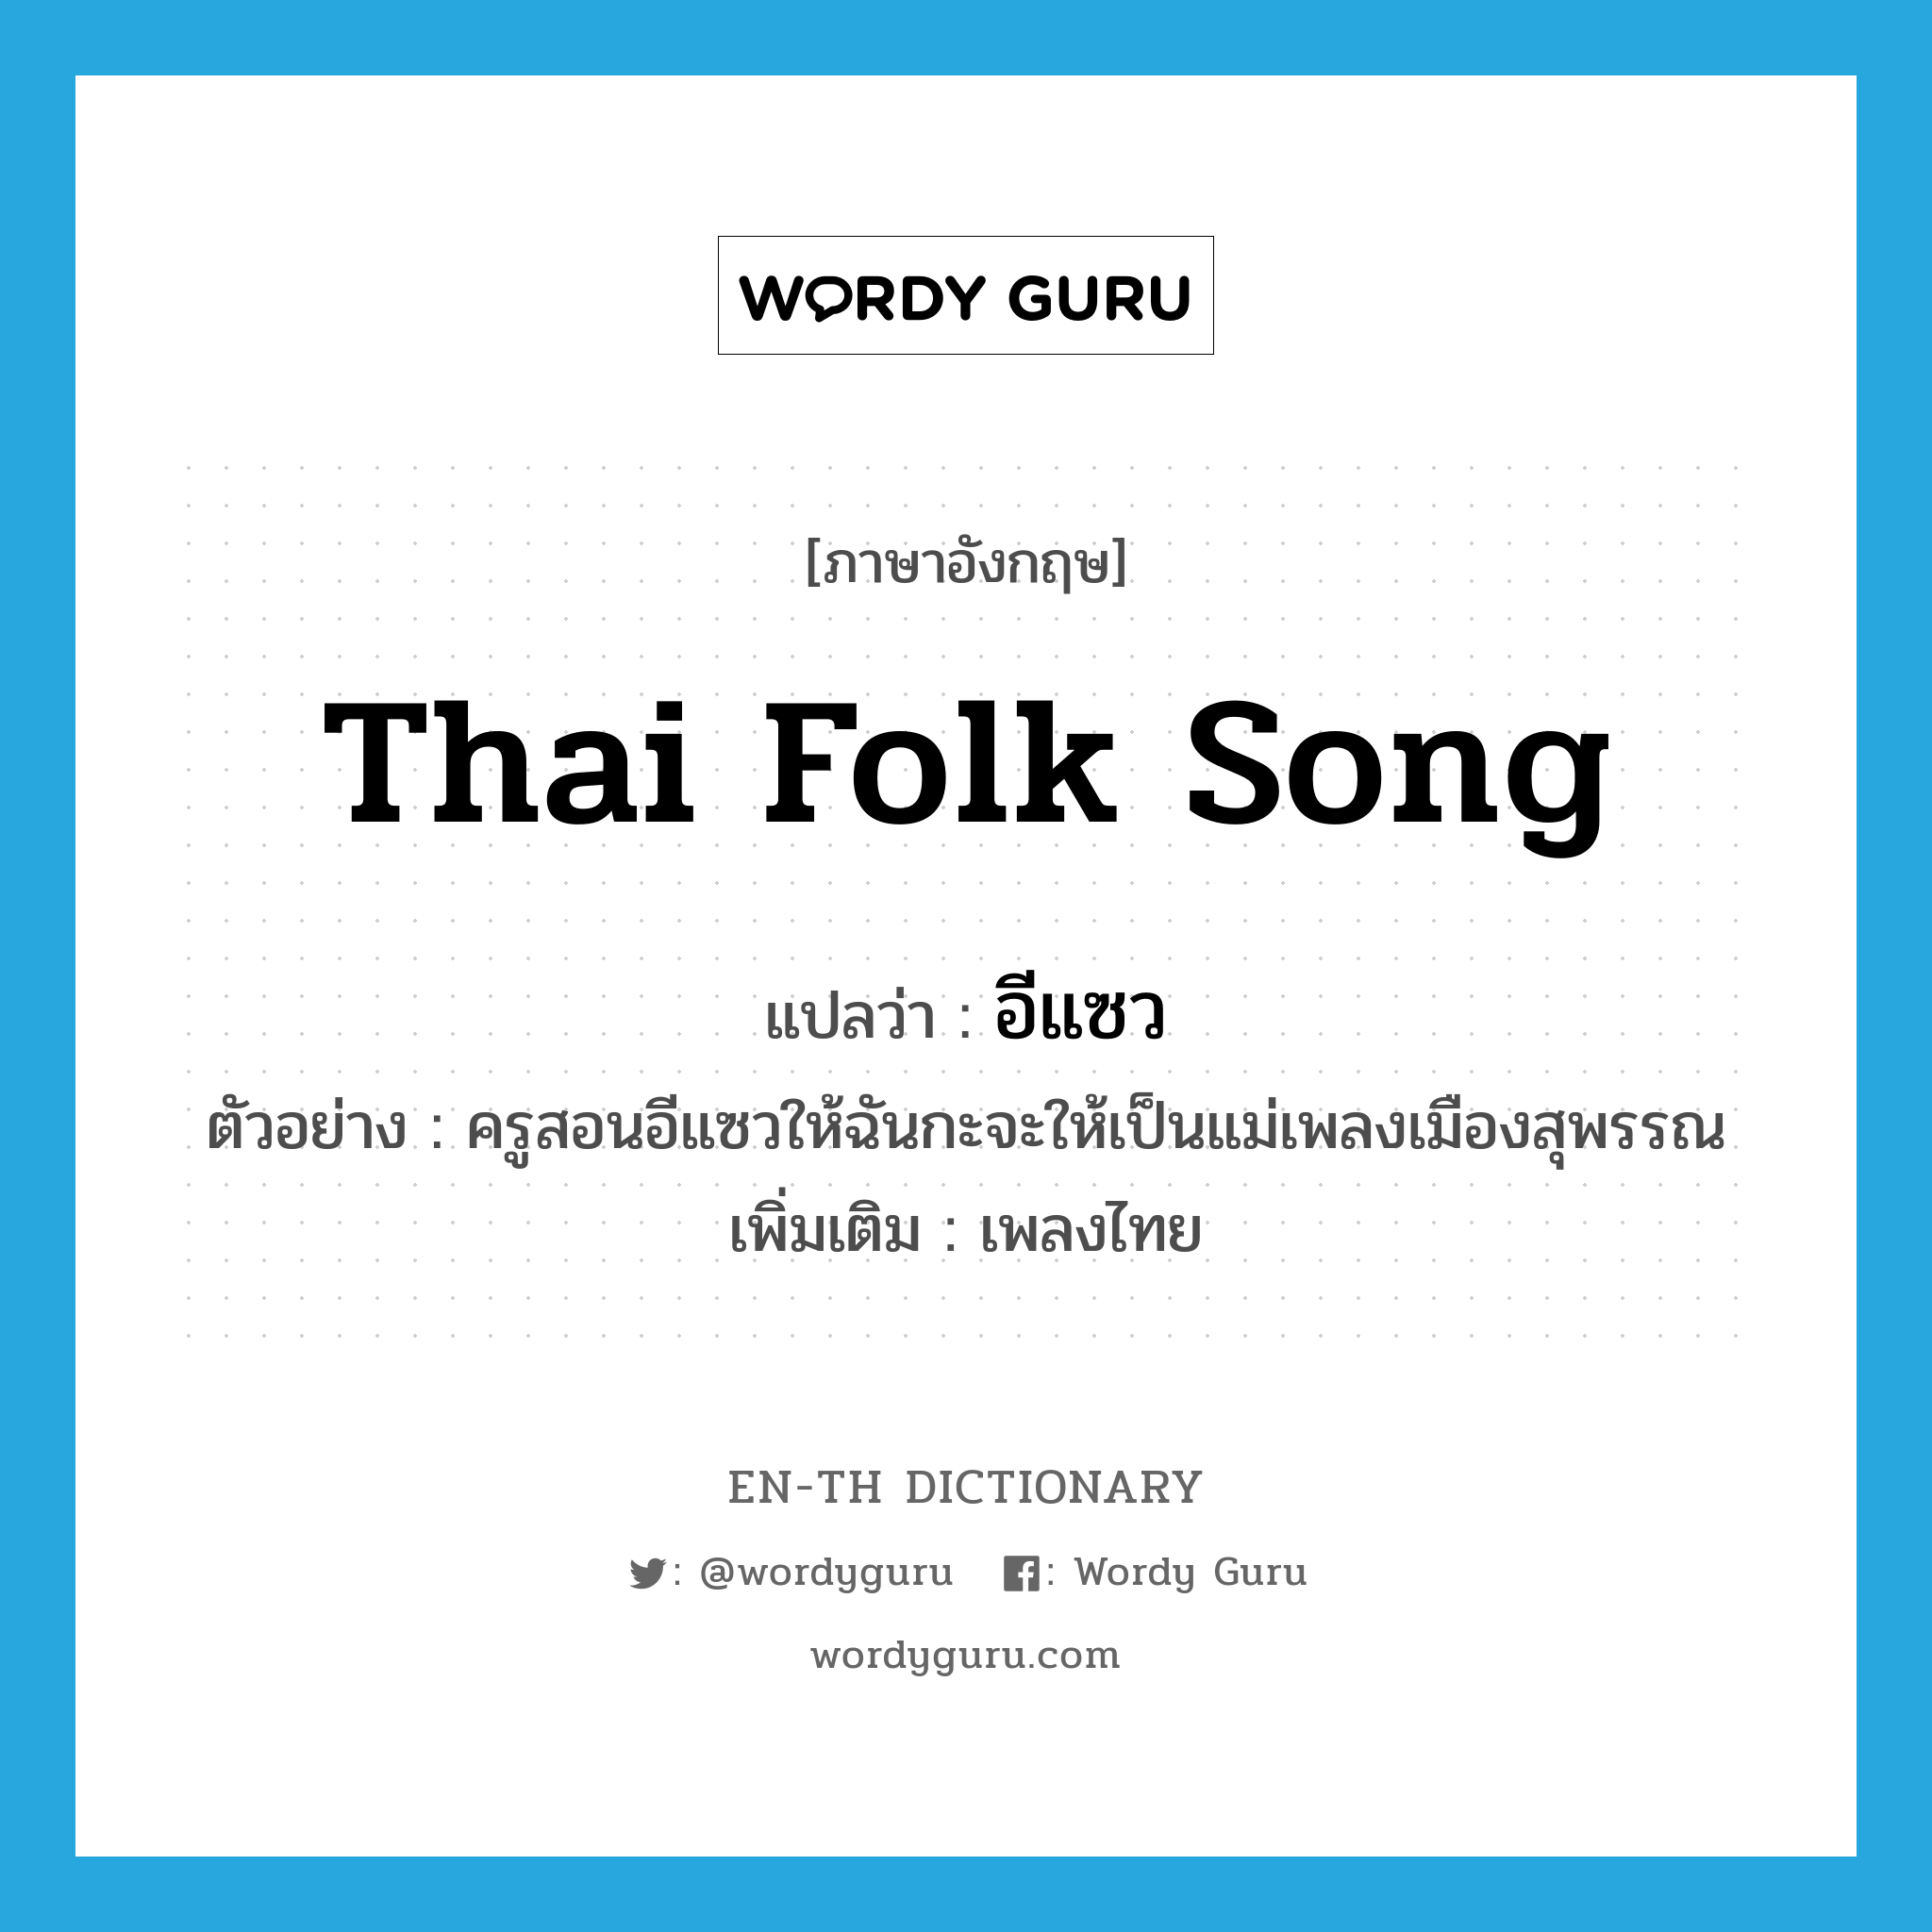 อีแซว ภาษาอังกฤษ?, คำศัพท์ภาษาอังกฤษ อีแซว แปลว่า Thai folk song ประเภท N ตัวอย่าง ครูสอนอีแซวให้ฉันกะจะให้เป็นแม่เพลงเมืองสุพรรณ เพิ่มเติม เพลงไทย หมวด N